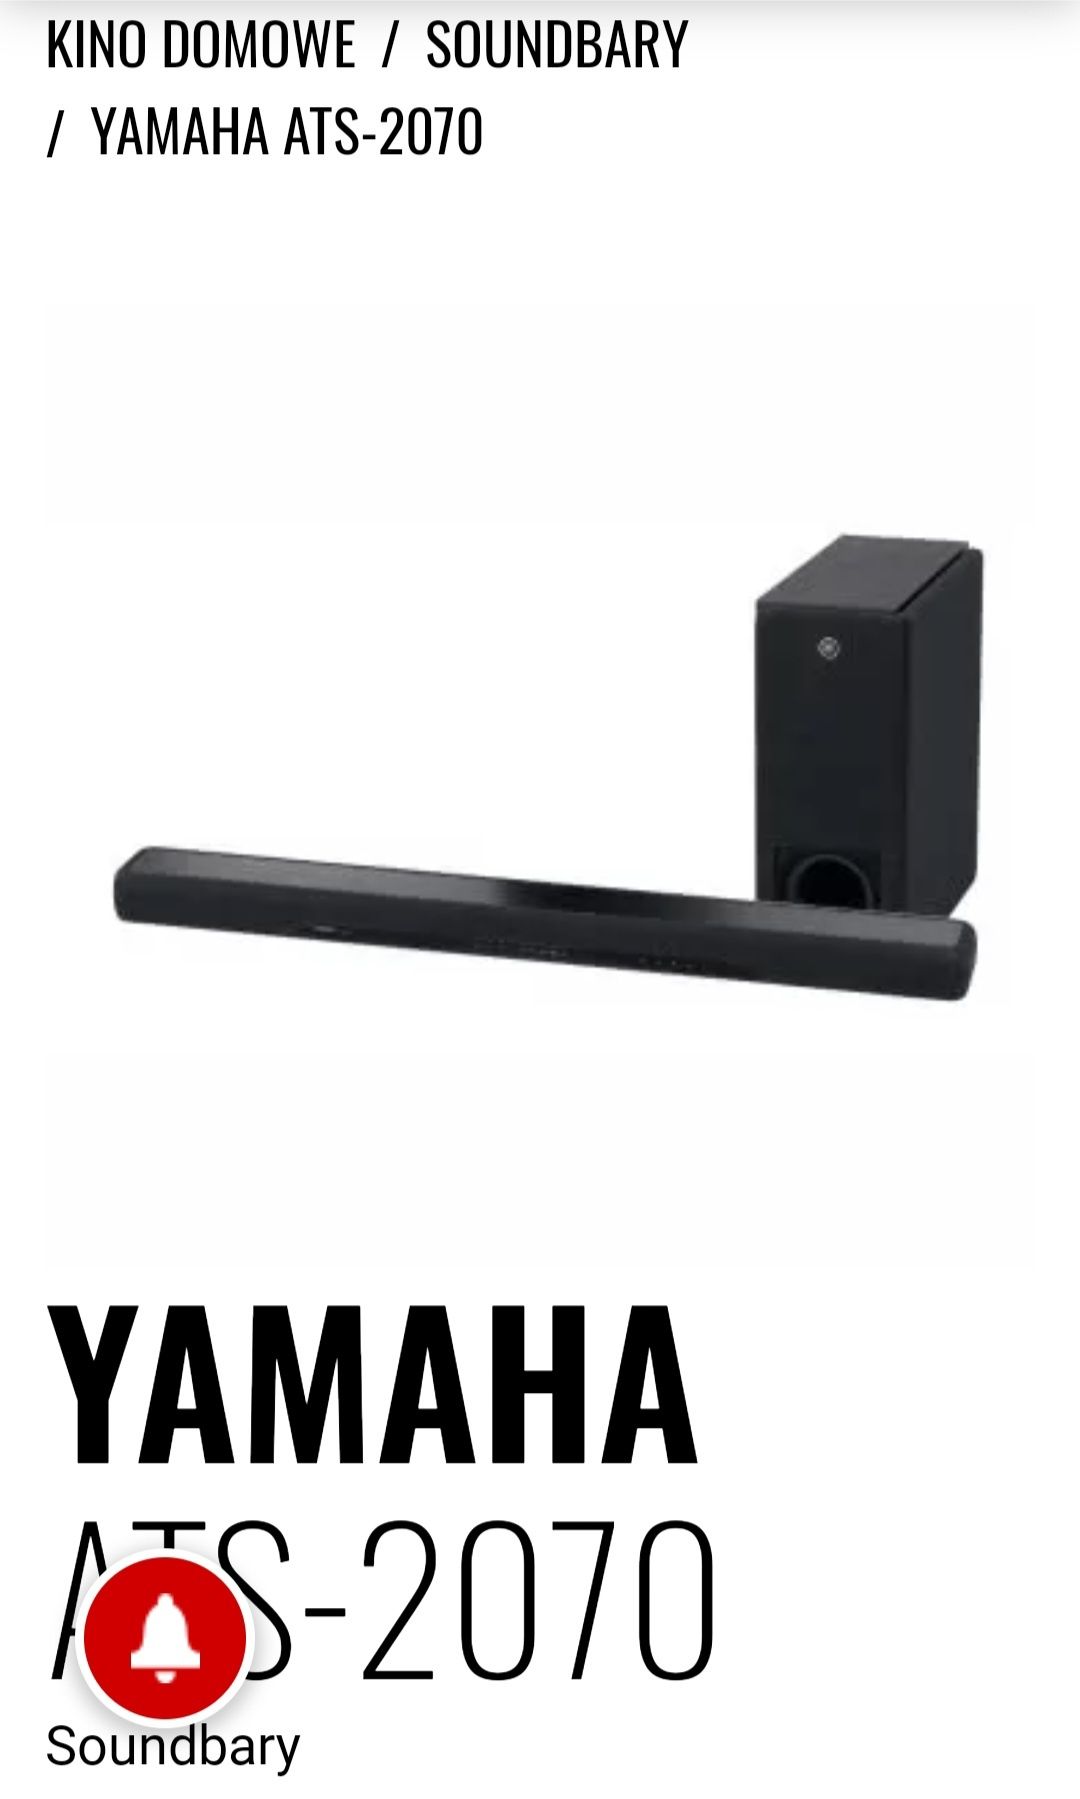 Kino domowe Yamaha